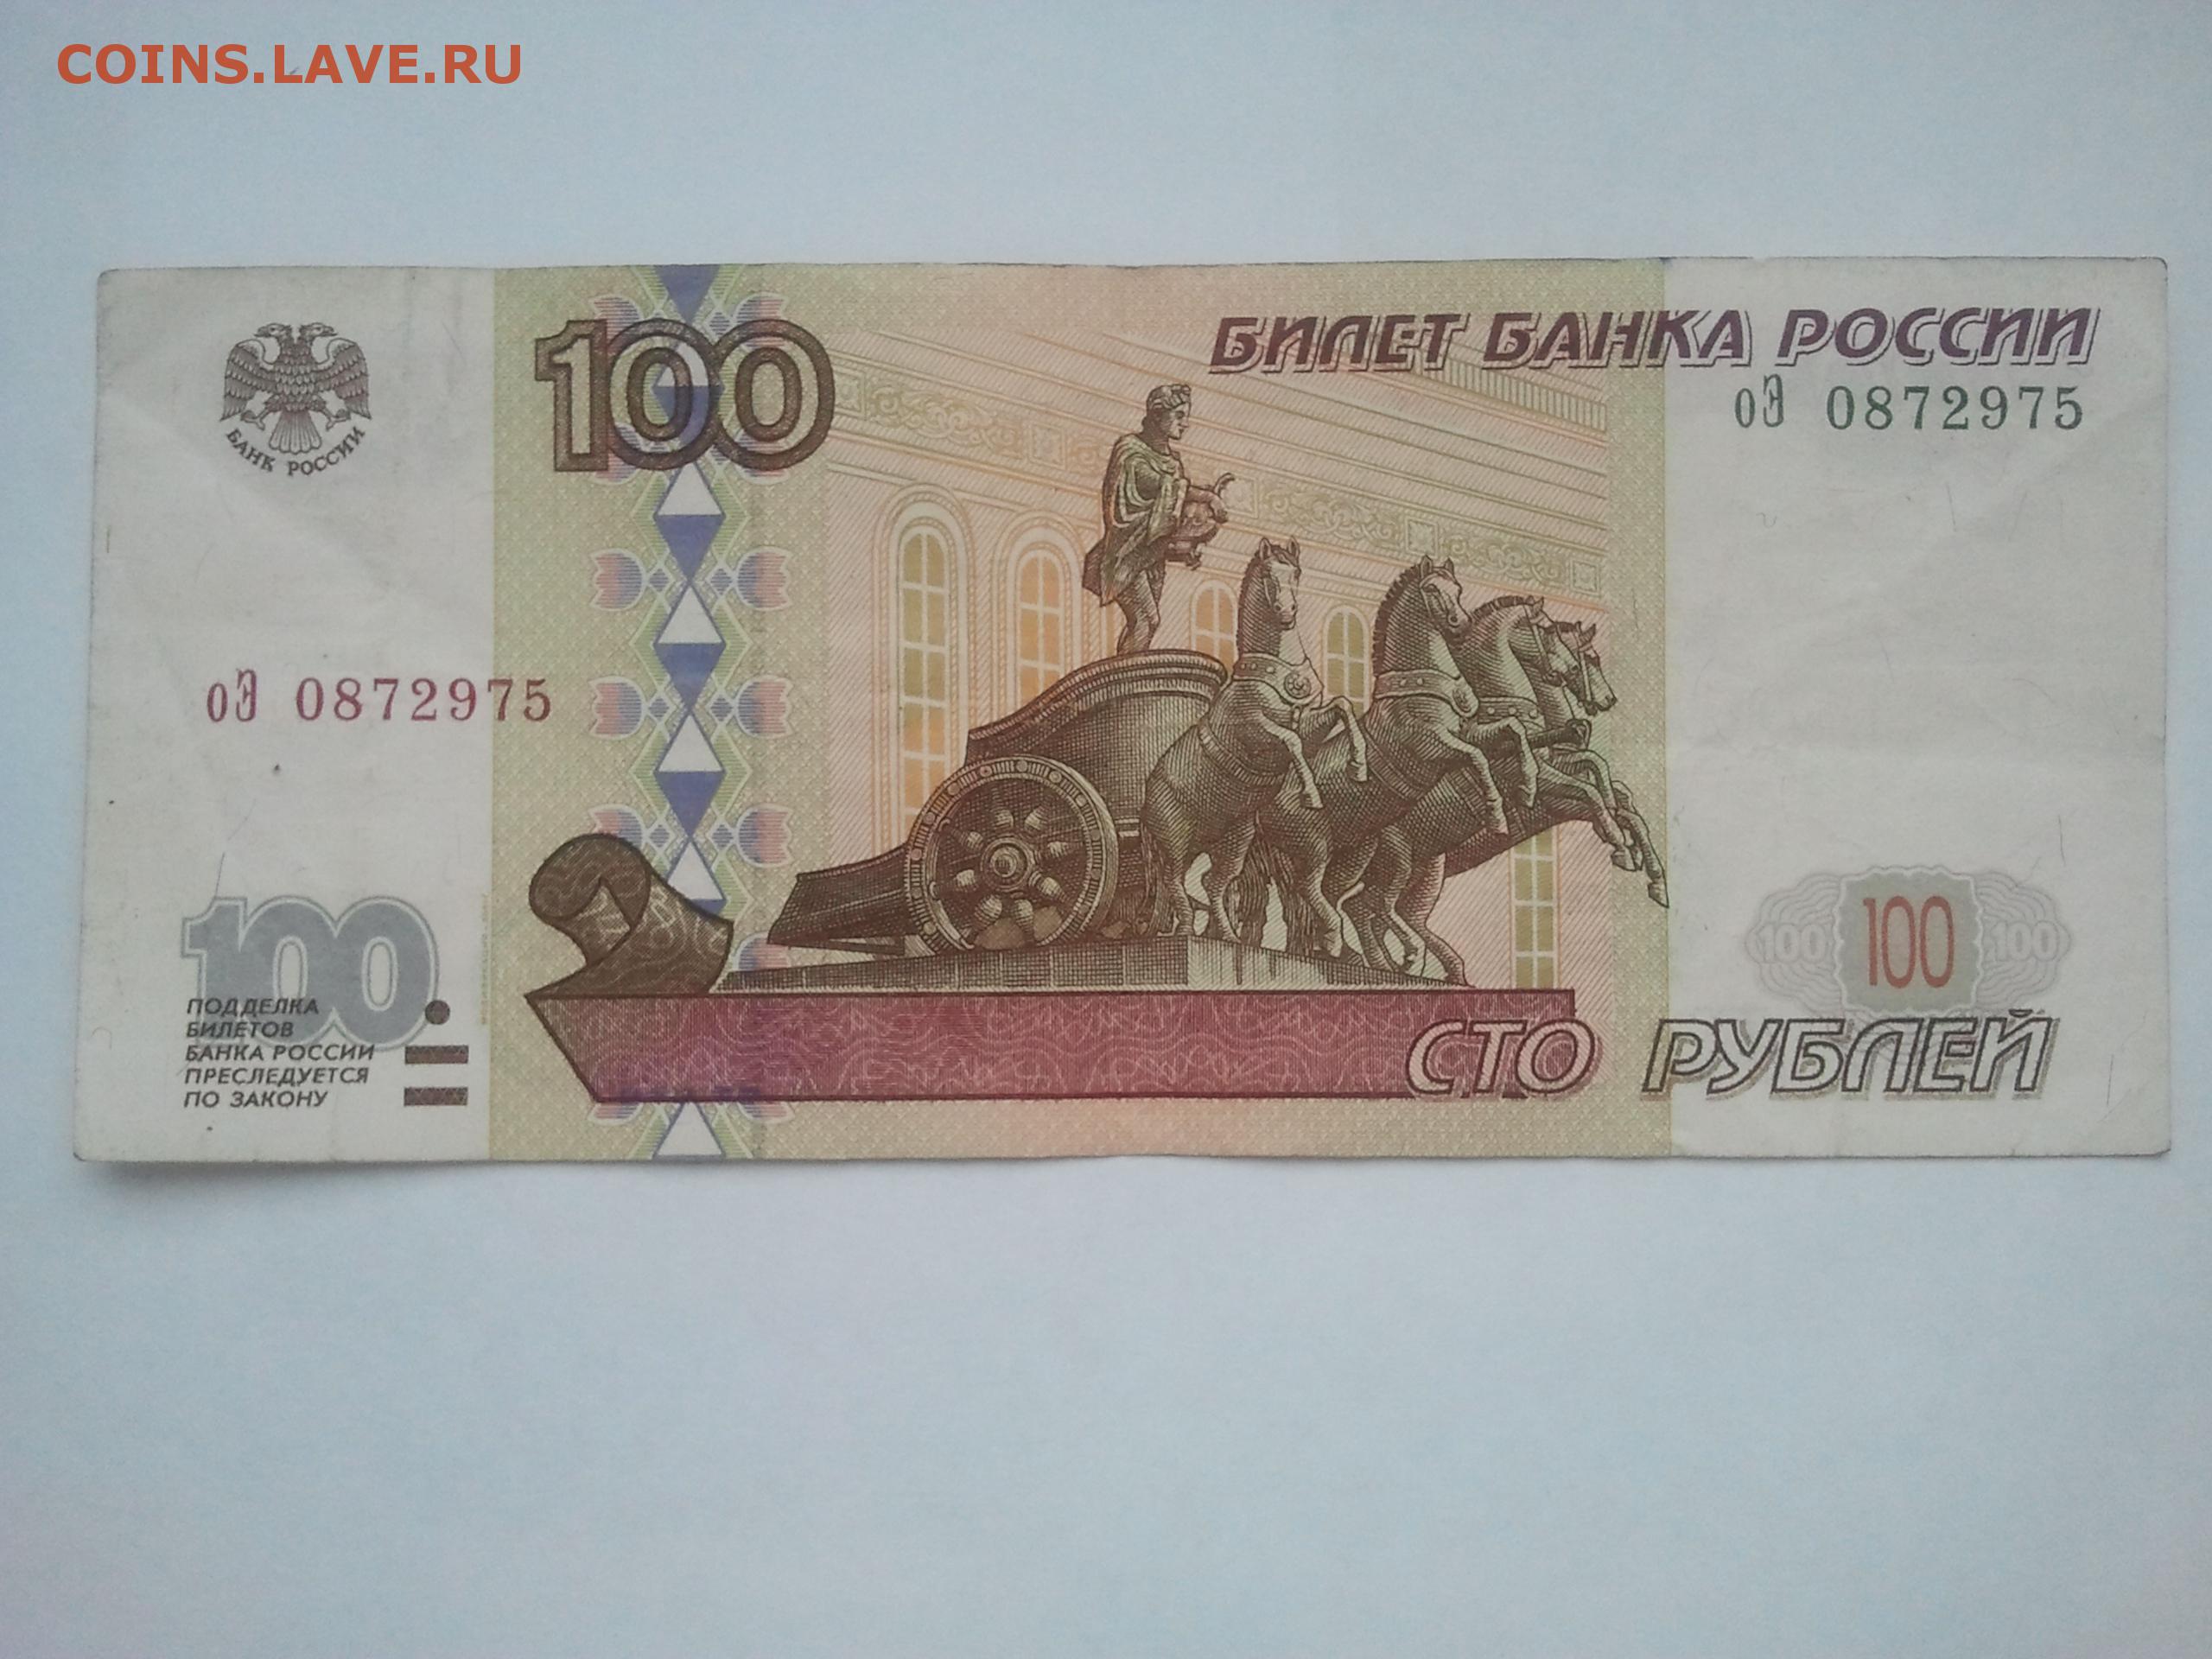 Год на купюре. 100 Рублей 1997 года. Купюра 100 рублей. Банкнота 100 рублей. Фальшивые СТО рублей.